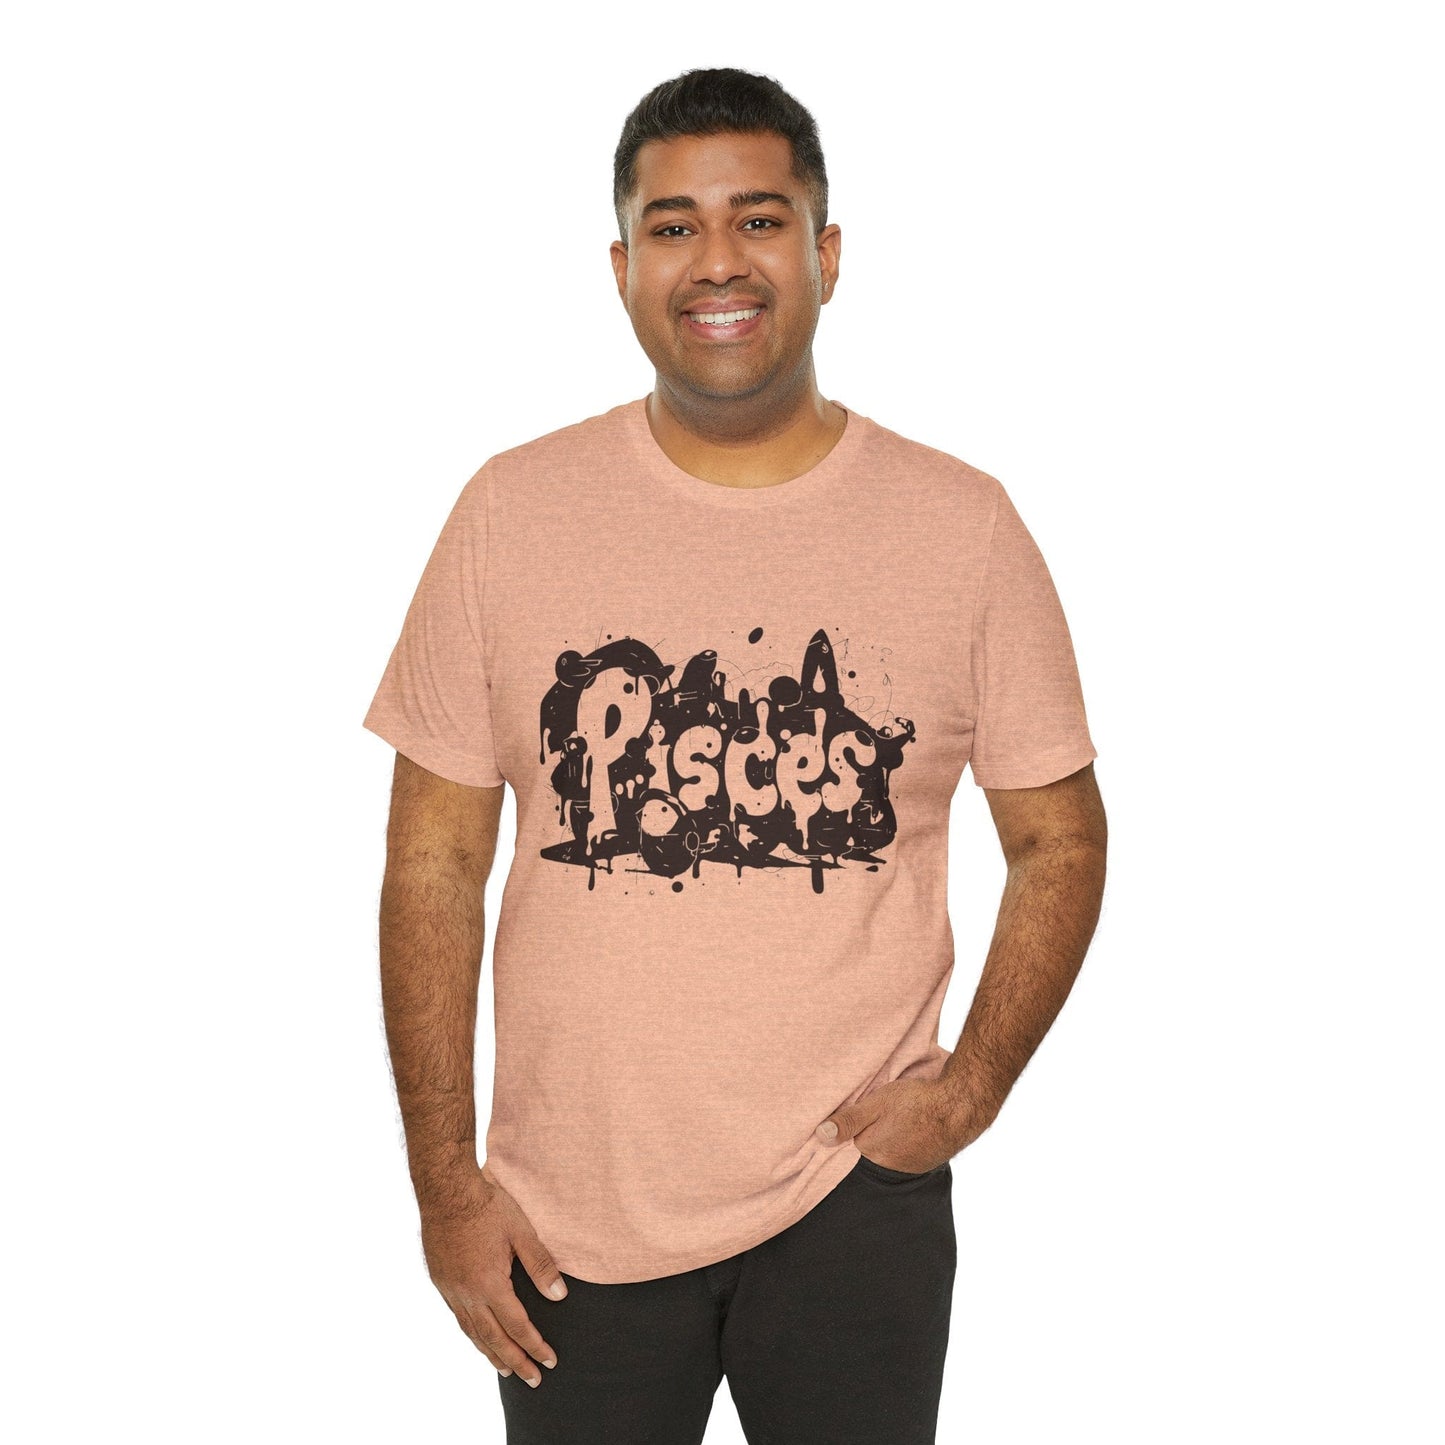 T-Shirt Piscean Inkflow TShirt: Depth of Imagination